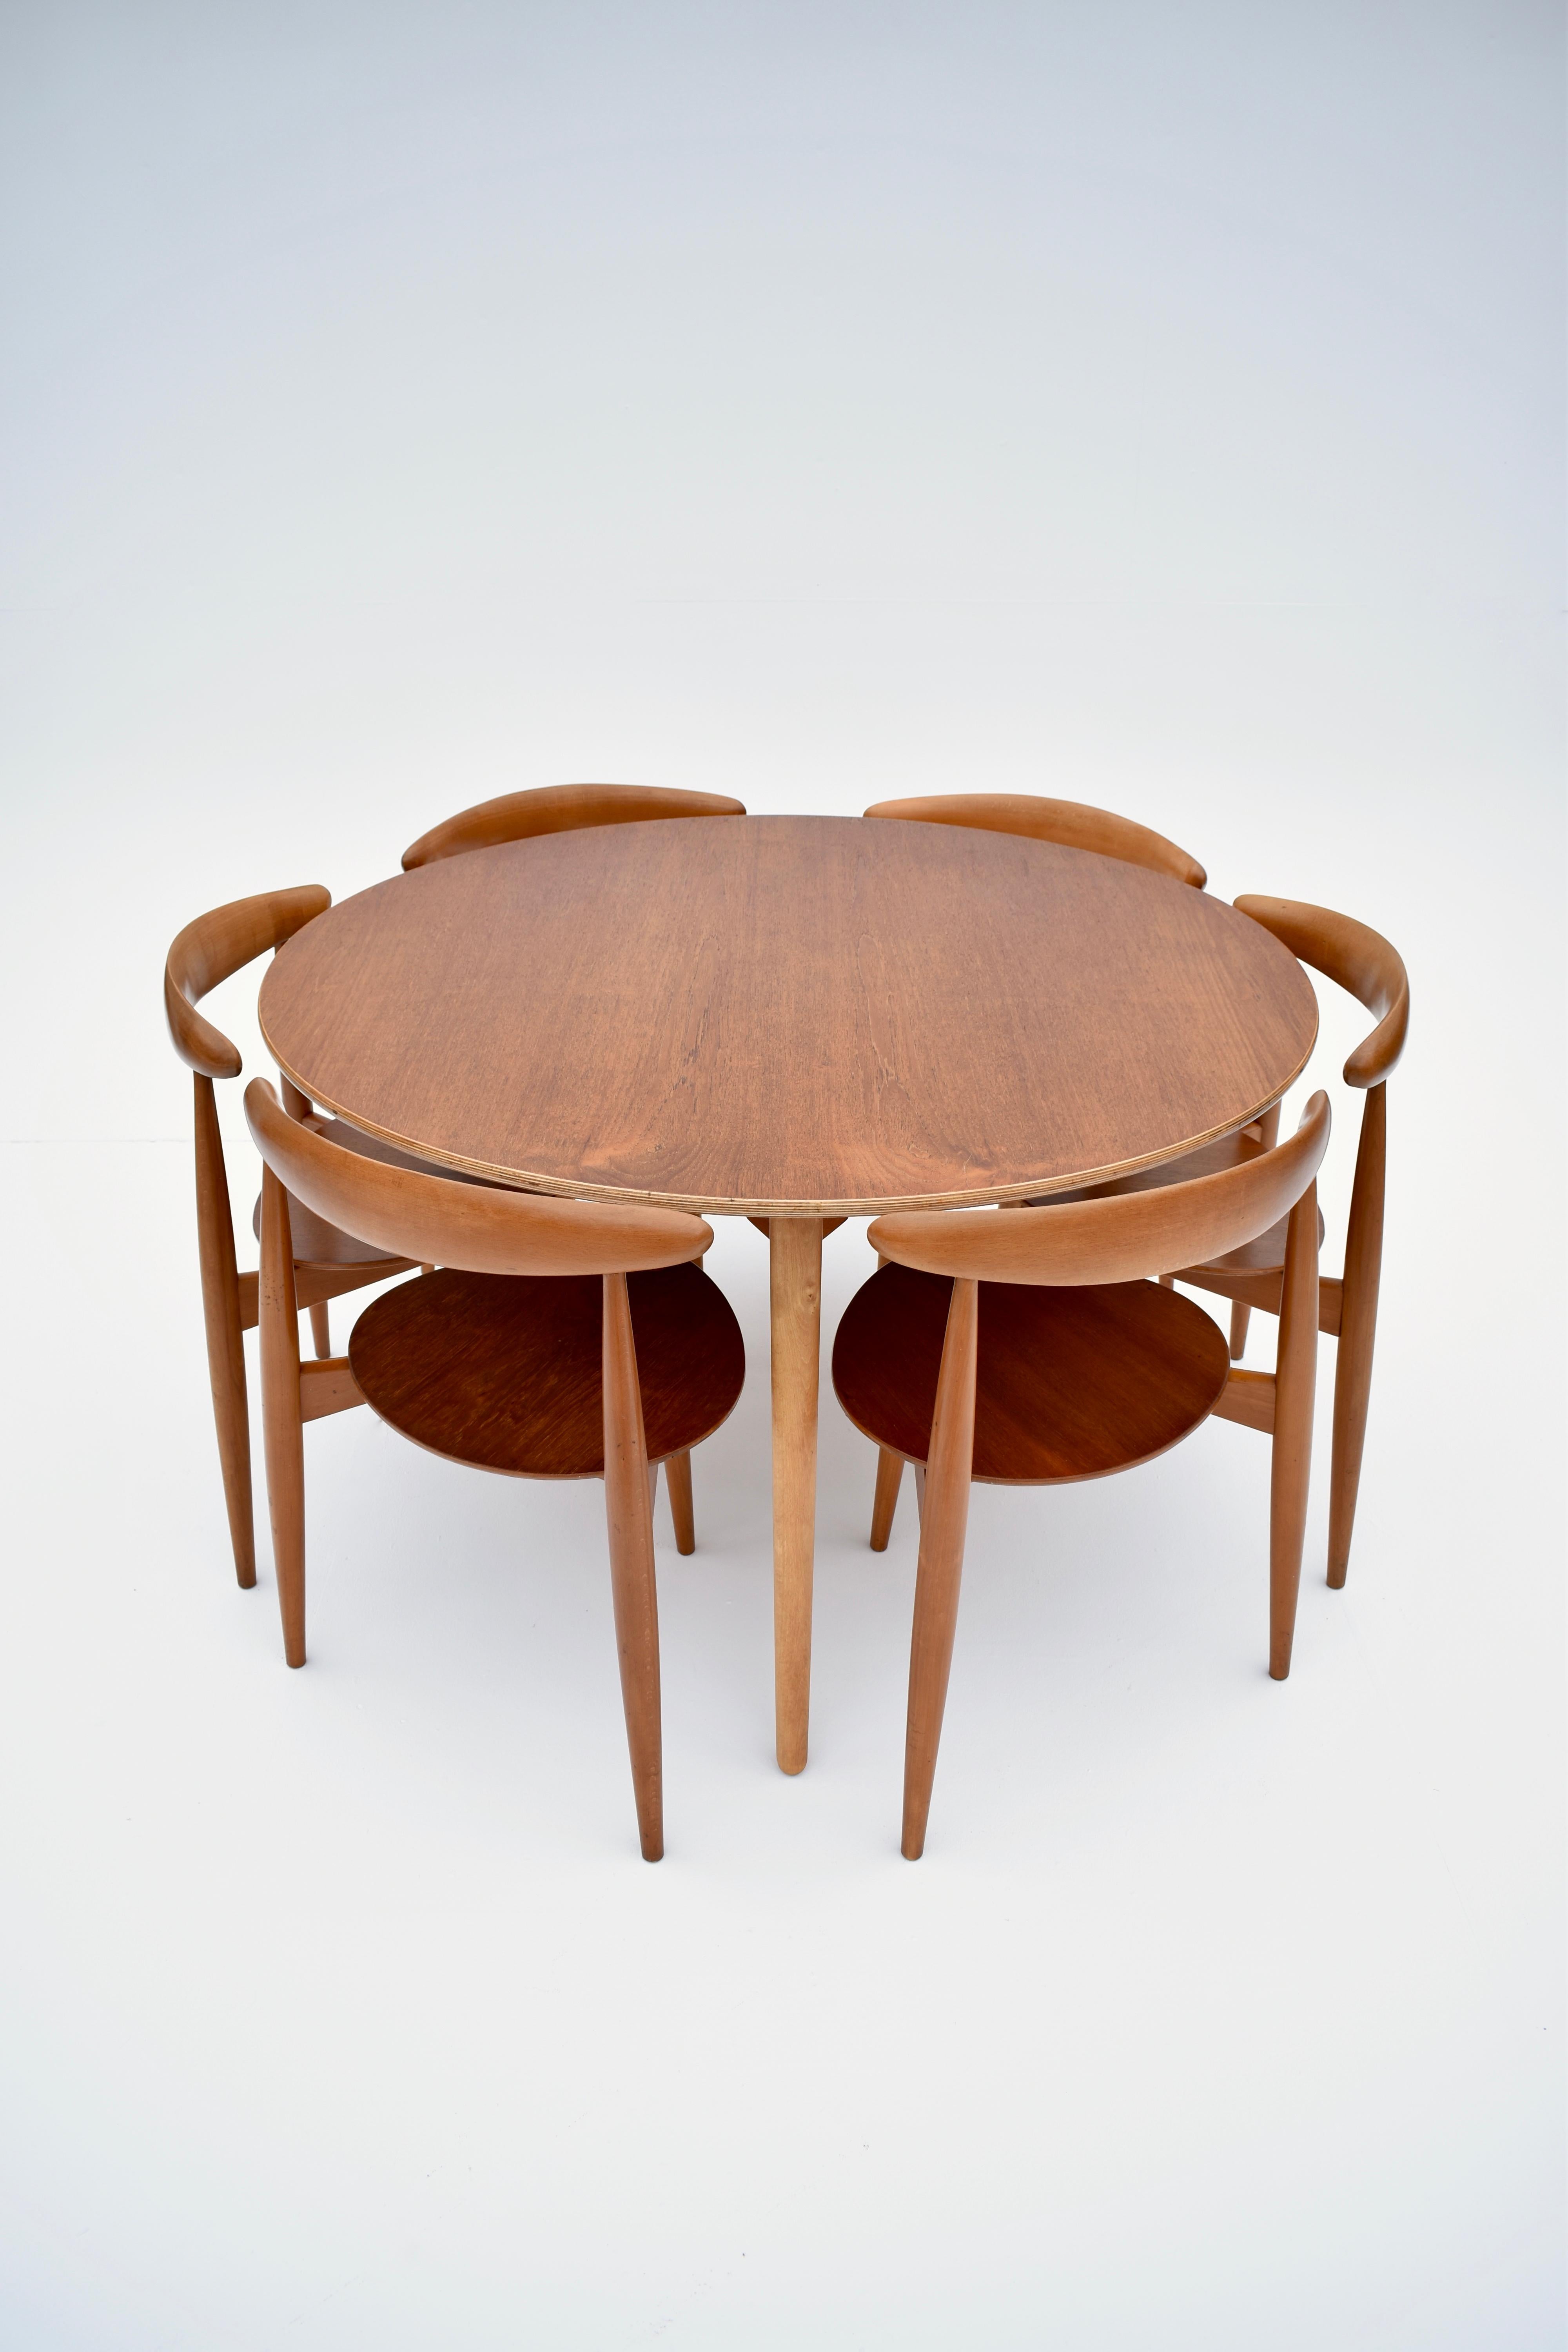 Un ensemble compact de salle à manger très difficile à trouver, conçu au début des années 50 par Hans Wegner et produit par Fritz Hansen, Danemark.

L'ensemble de six chaises en hêtre et en teck s'assoit à plat sous la table, ce qui est à la fois